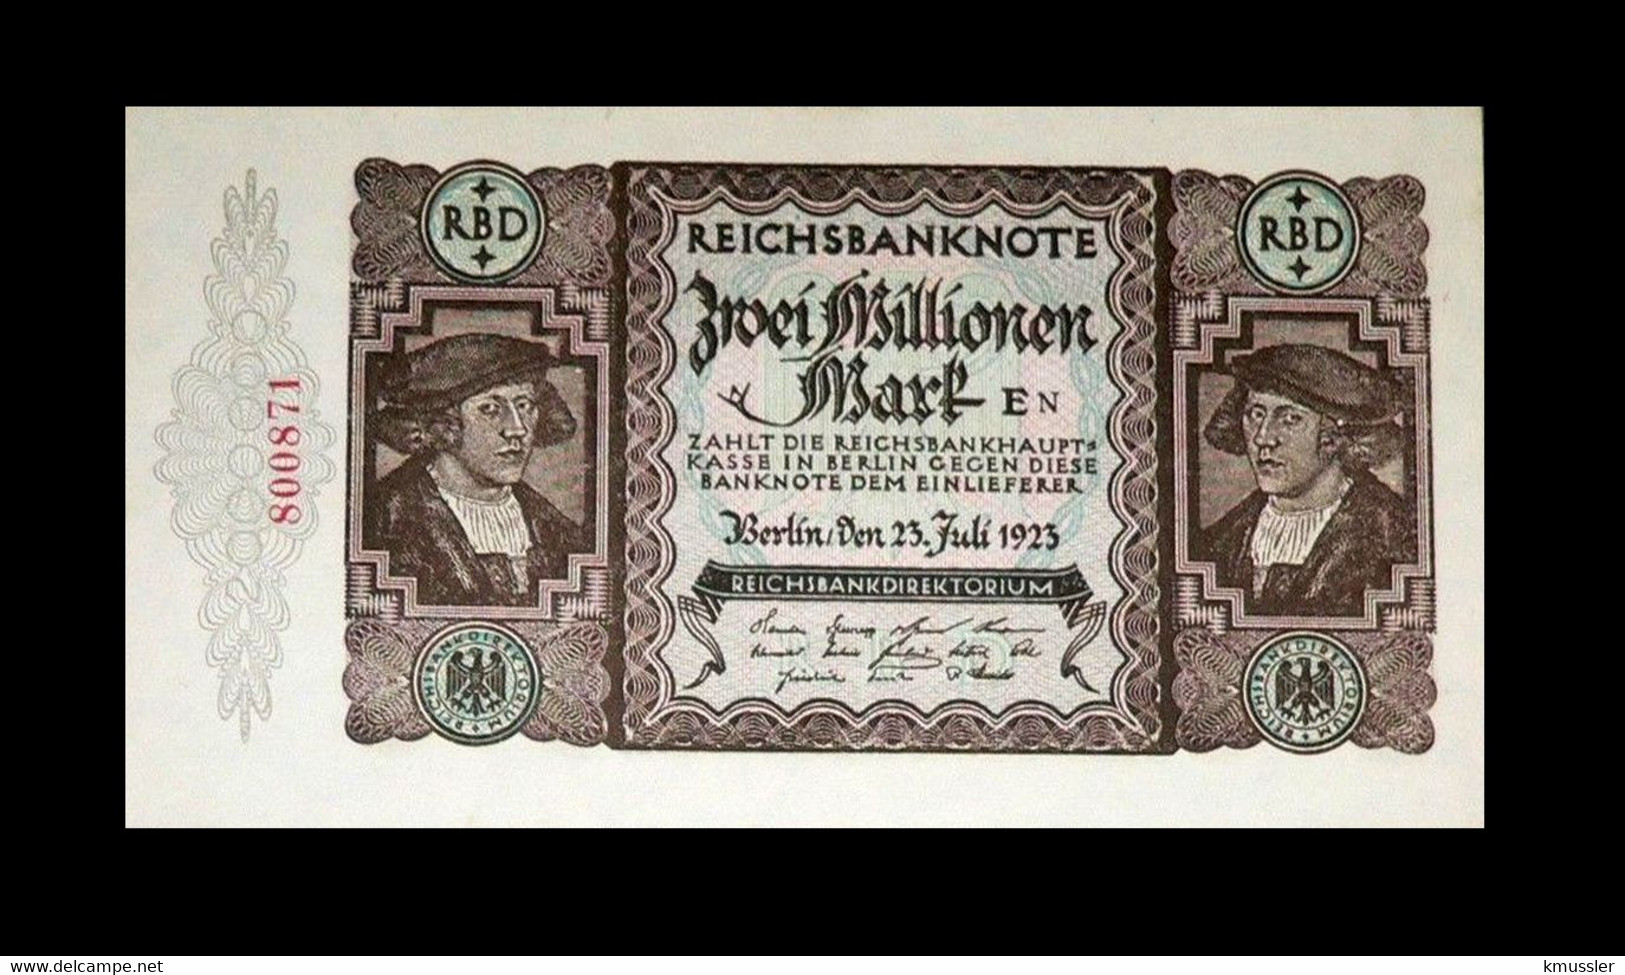 # # # Banknote Germany (Dt. Reich) 2 Mio Mark 1923 UNC # # # - 2 Millionen Mark